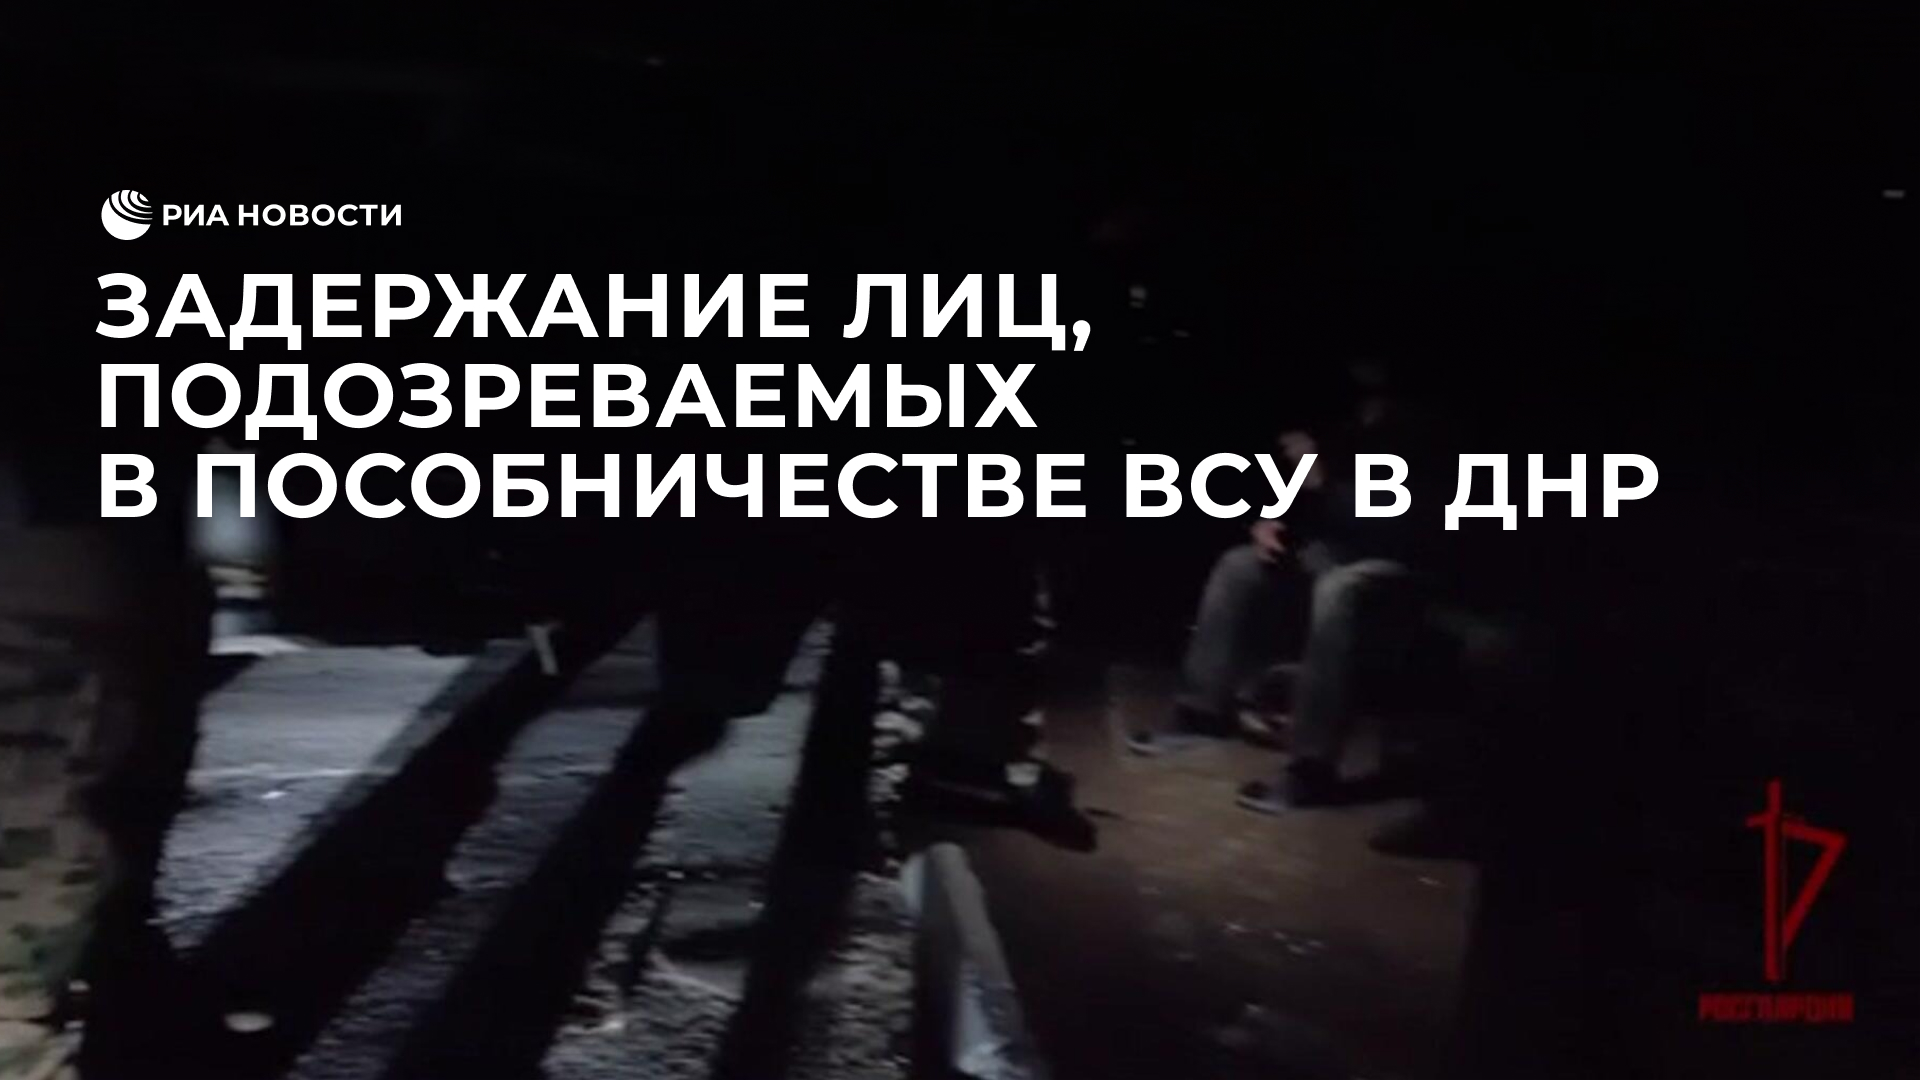 Задержание лиц, подозреваемых в пособничестве ВСУ в ДНР